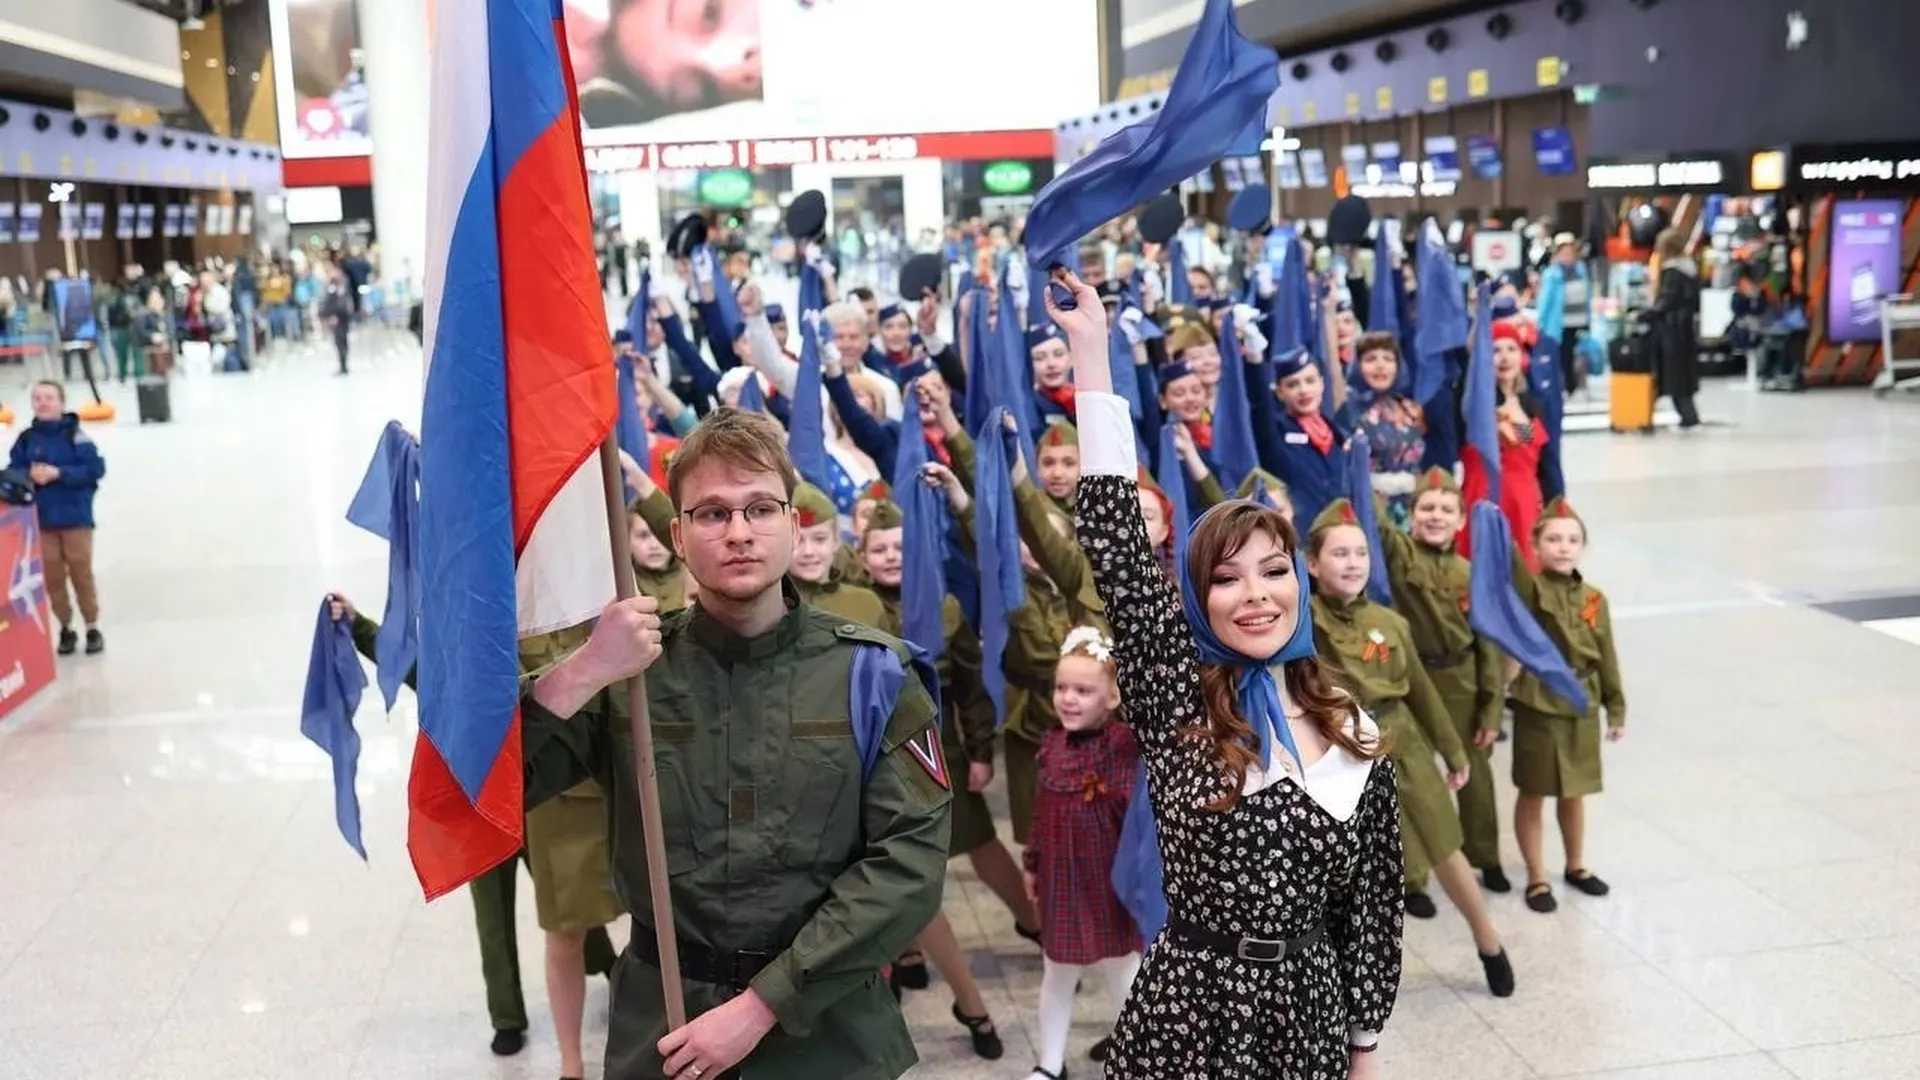 Акция «Синий платочек Победы» прошла в аэропорту Шереметьево